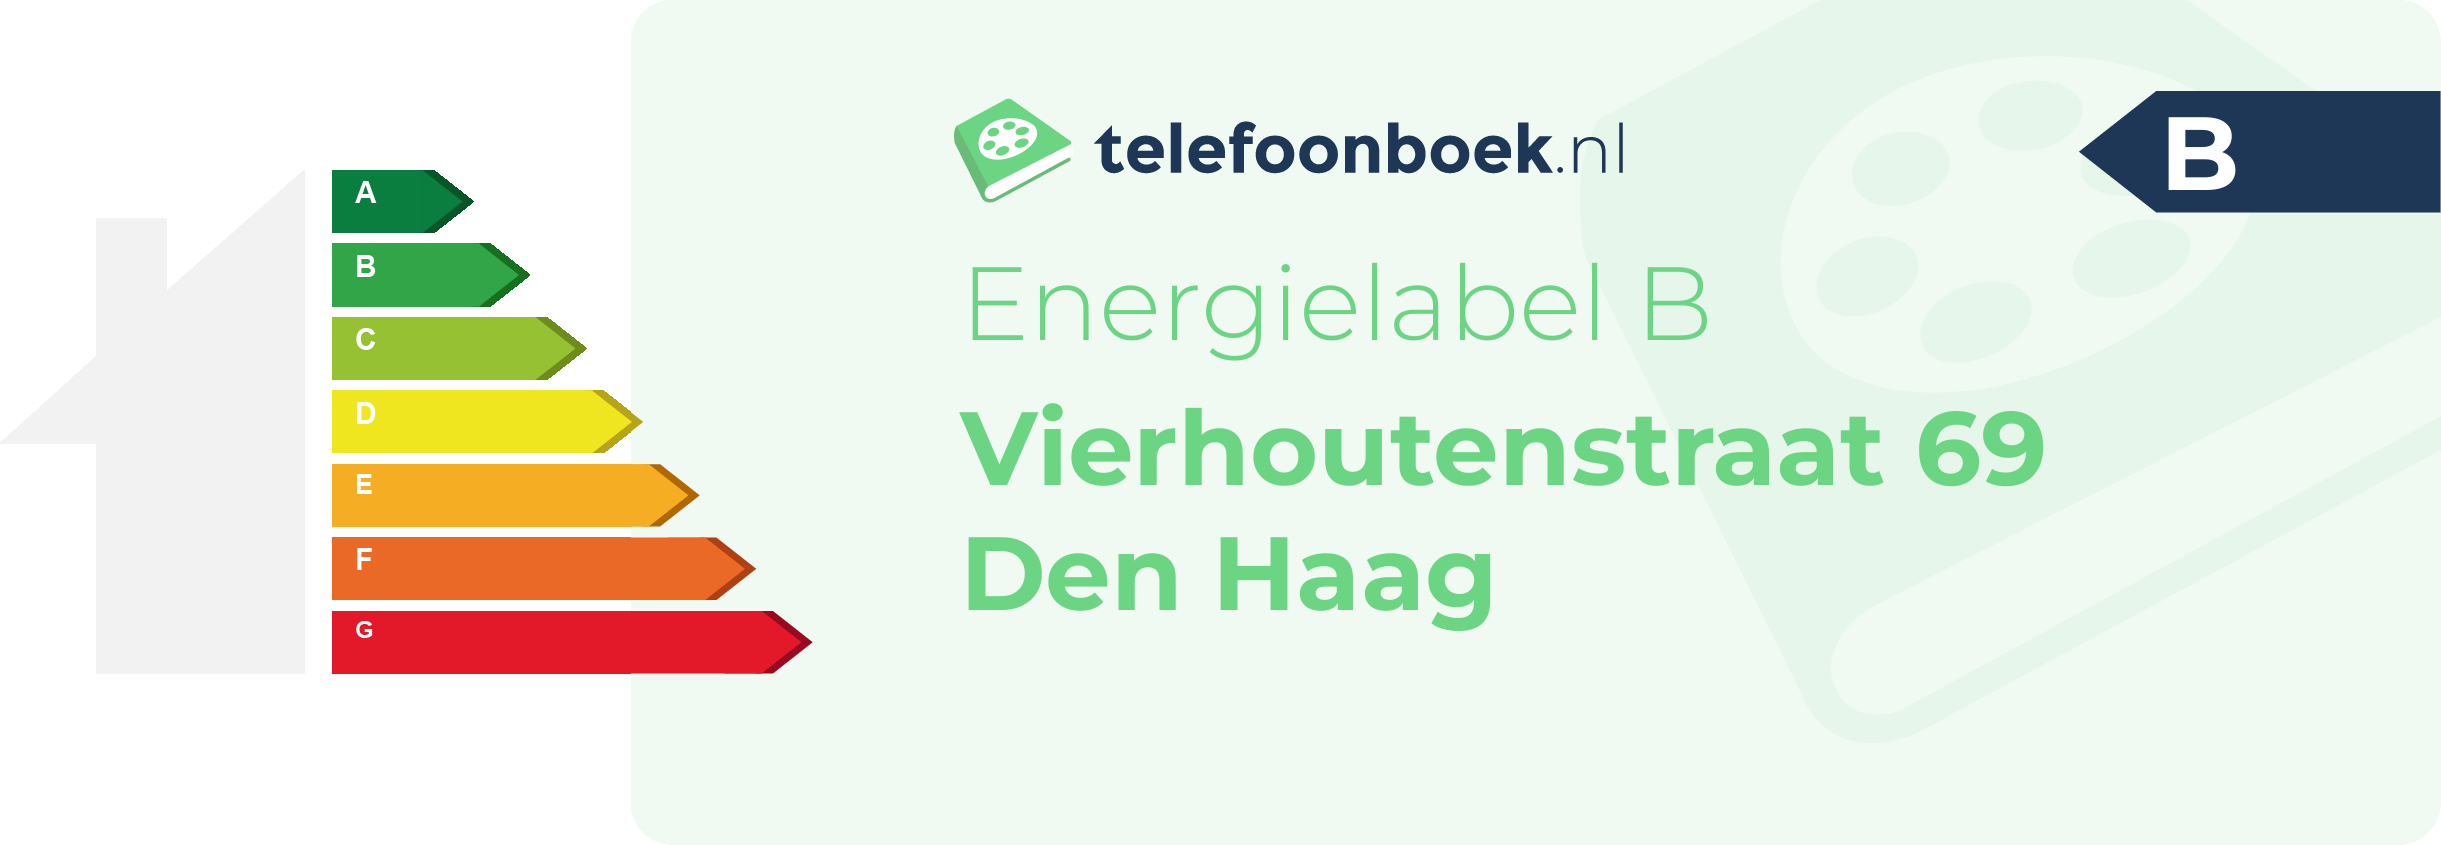 Energielabel Vierhoutenstraat 69 Den Haag